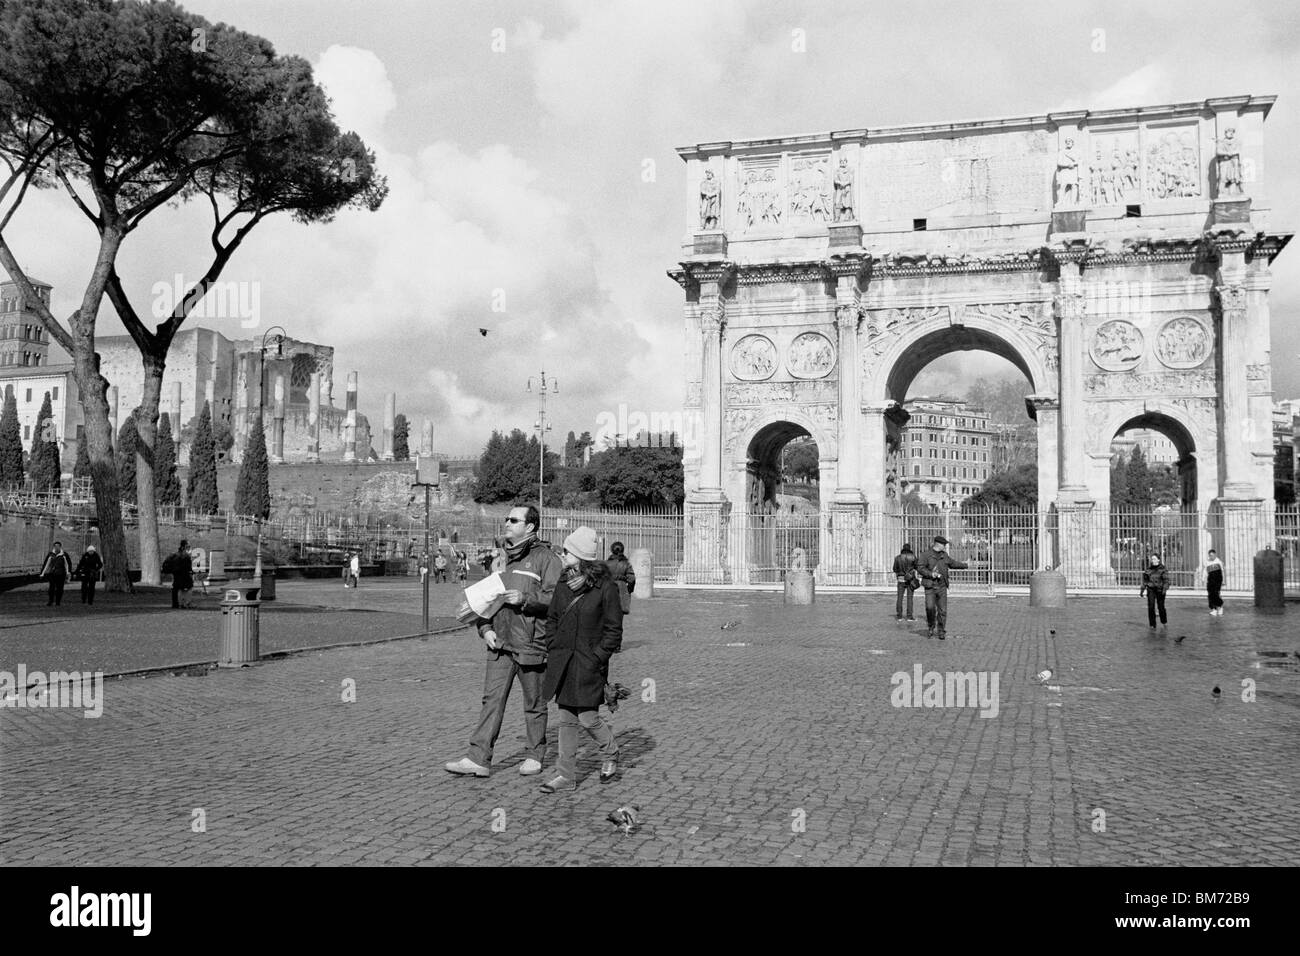 Rome, Italie, 30 janvier 2010 -- l'Arc de Constantin, capturés en noir et blanc sur film négatif Agfa APX 100. Banque D'Images